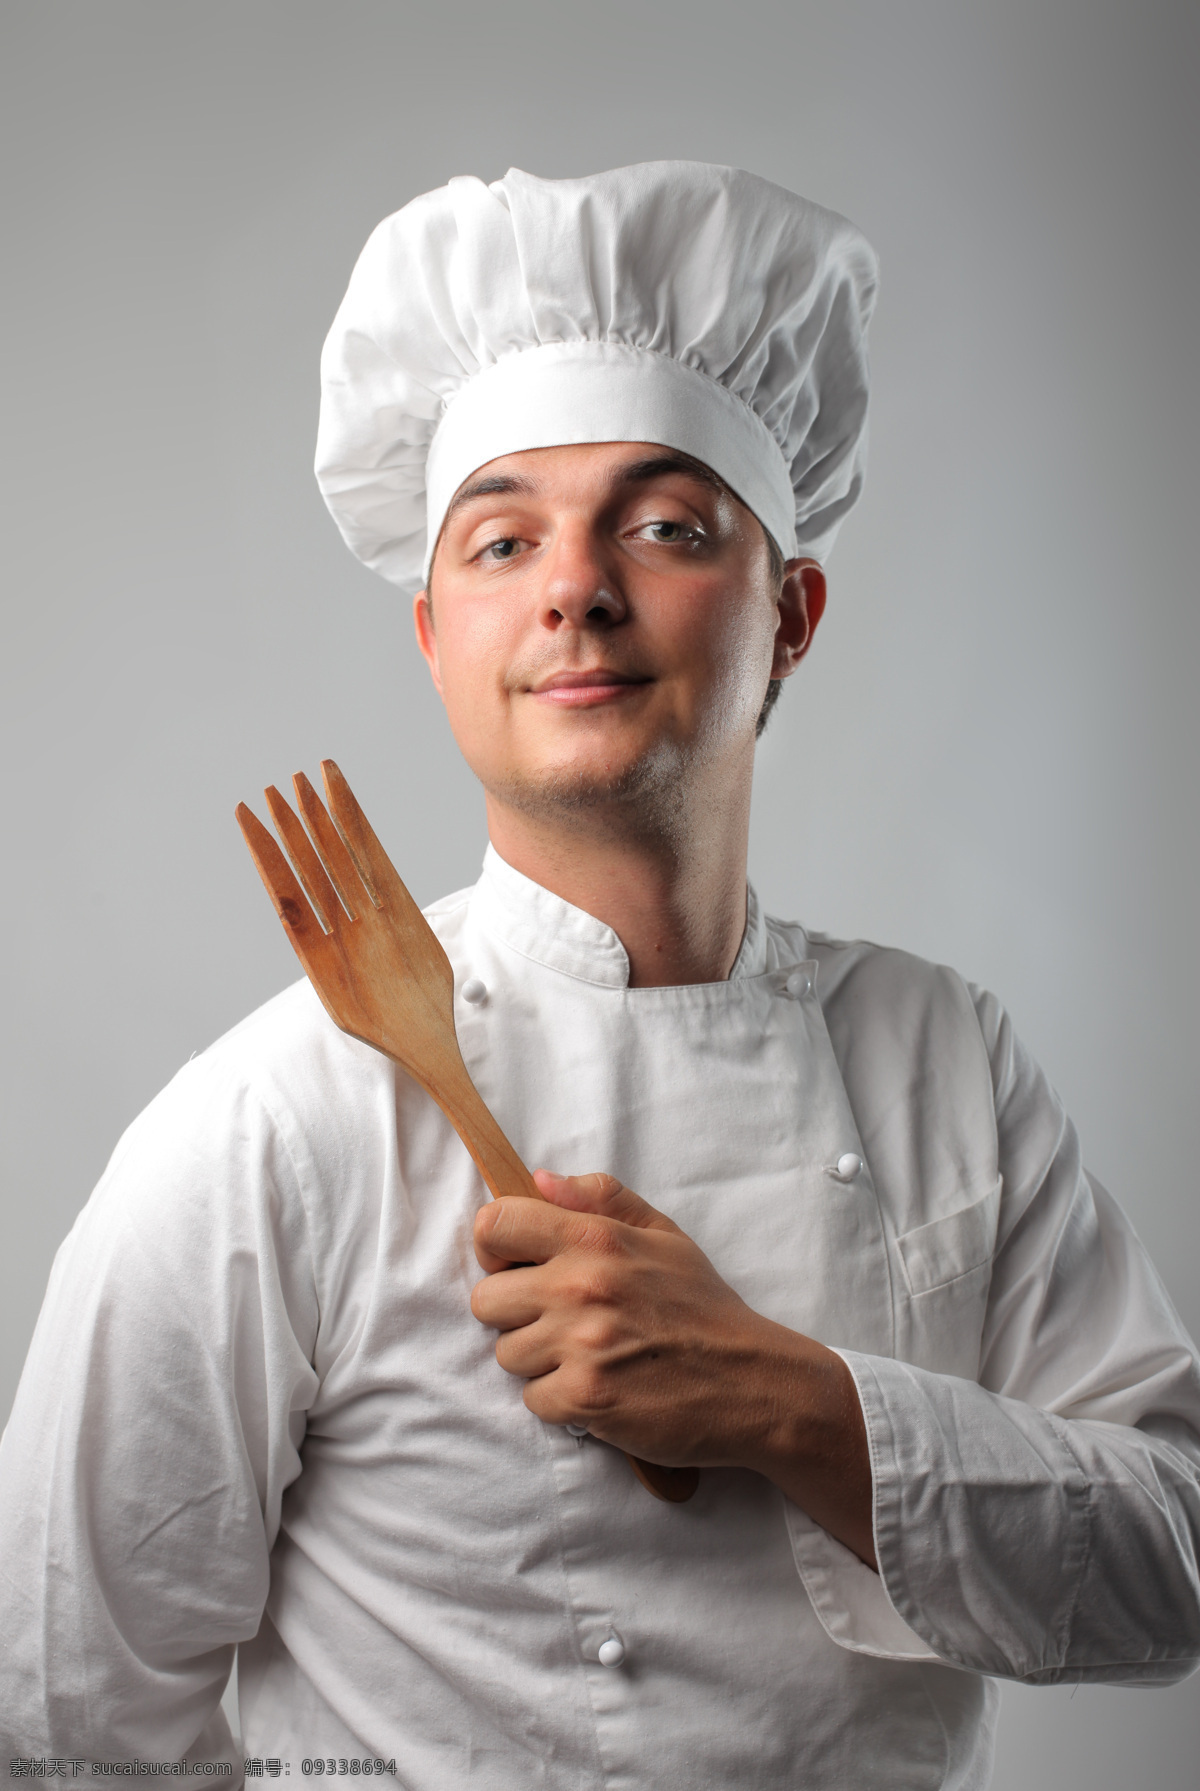 手 木 勺子 厨师 外国男性 职业男人 自信笑容 餐饮服务业 人物摄影 高清图片 商务人士 人物图片